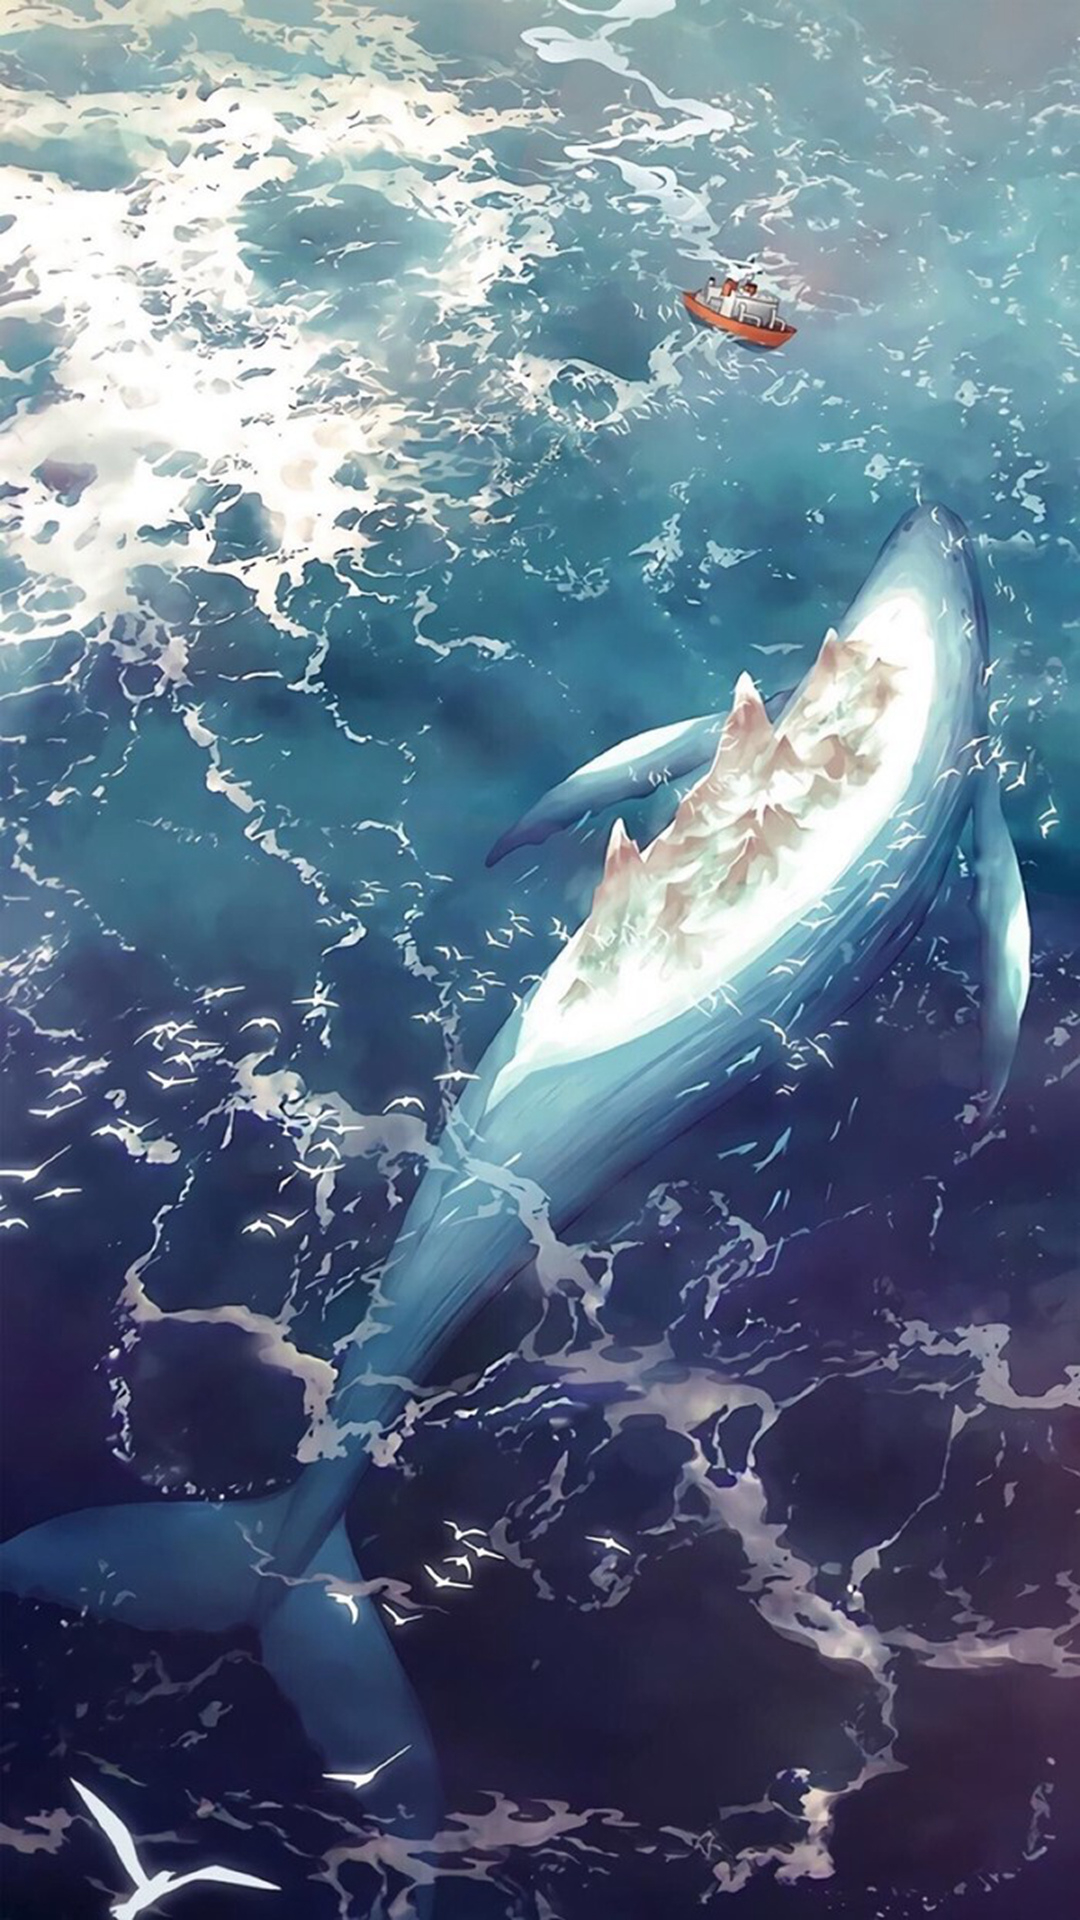 唯美的梦境鲸鱼，玄幻幻想空间创意风景壁纸图片套图1